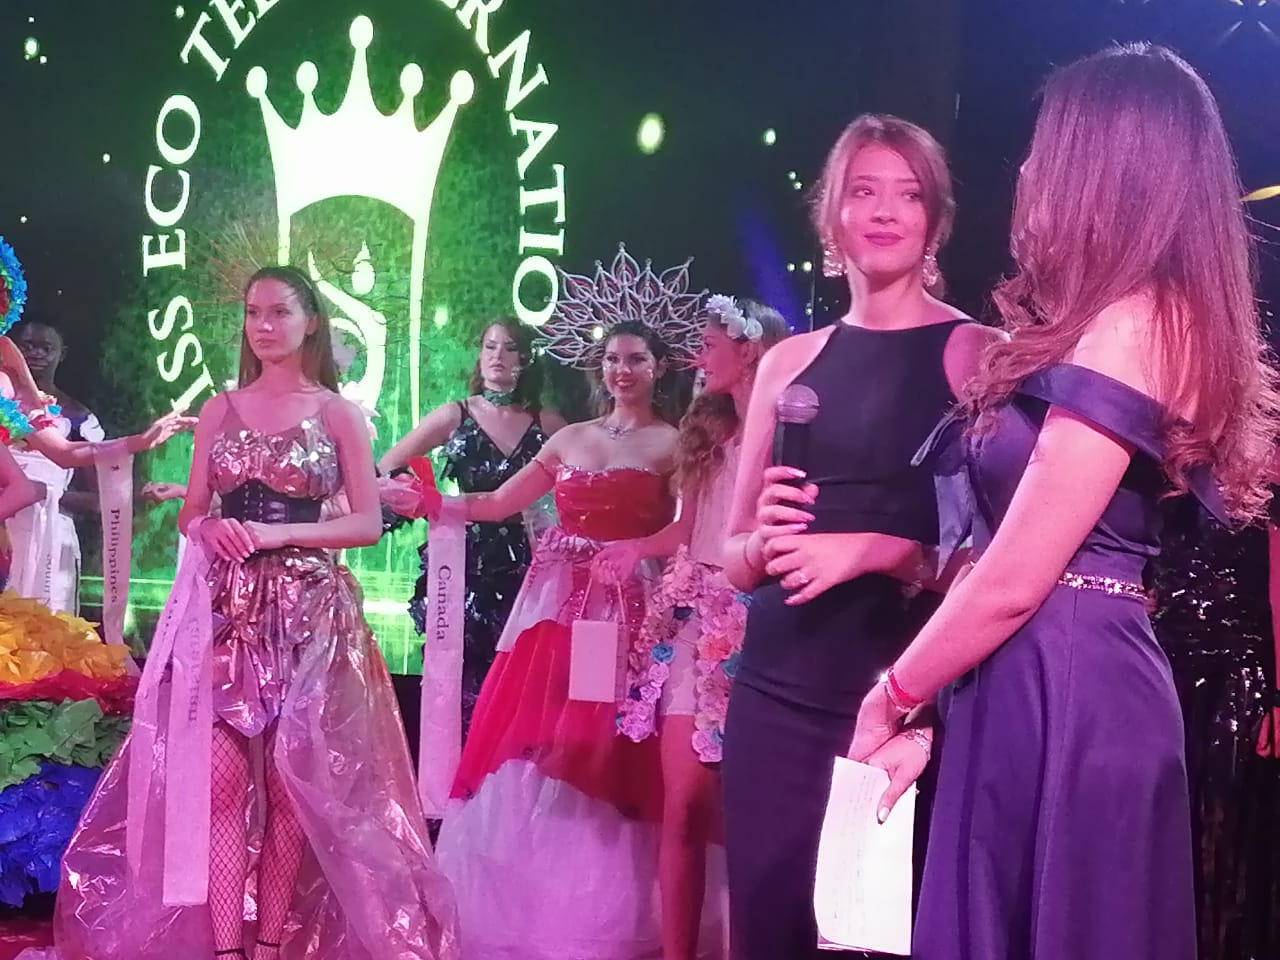 فلبينية تفوز بلقب "مس ايكو دريس" ضمن فعاليات مسابقة ملكات جمال السياحة والبيئة بالغردقة